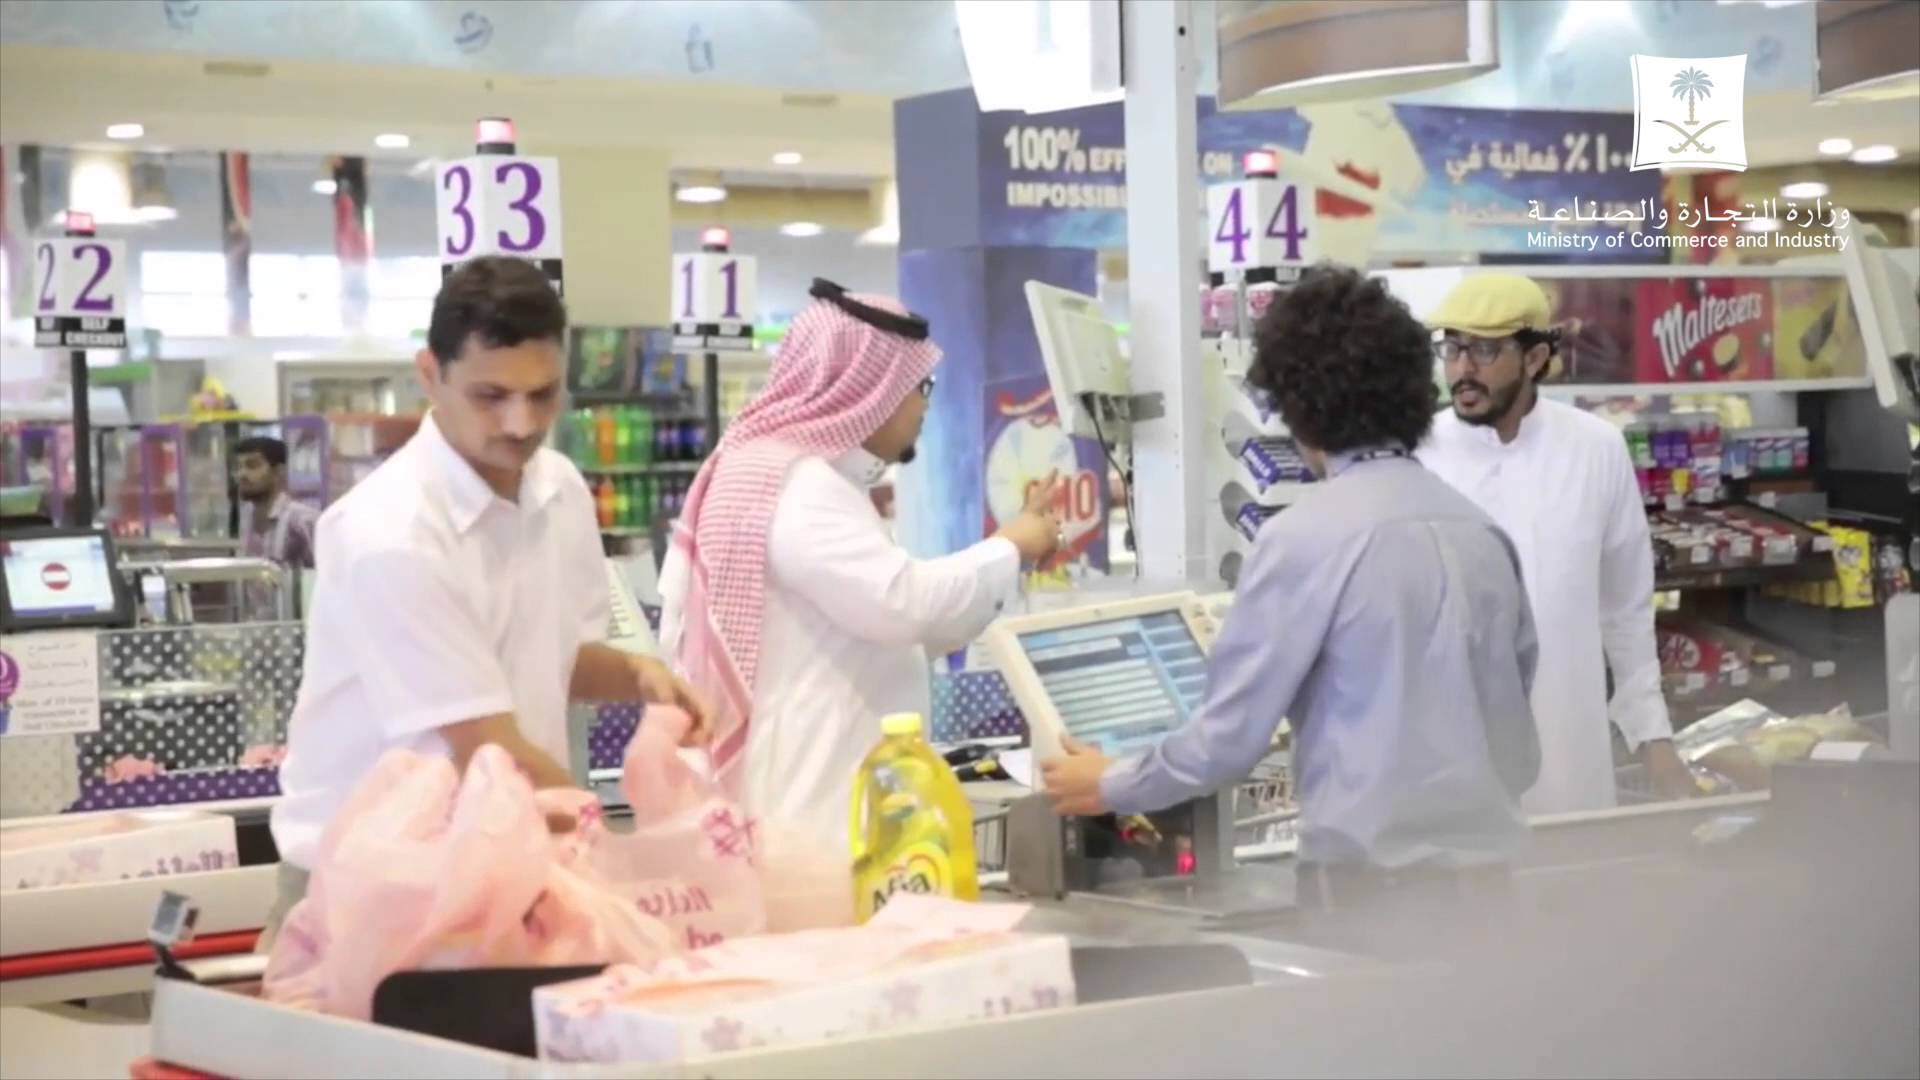 فيديو: مقلب من وزارة التجارة في زبائن سوبر ماركت لقياس وعي المستهلك السعودي